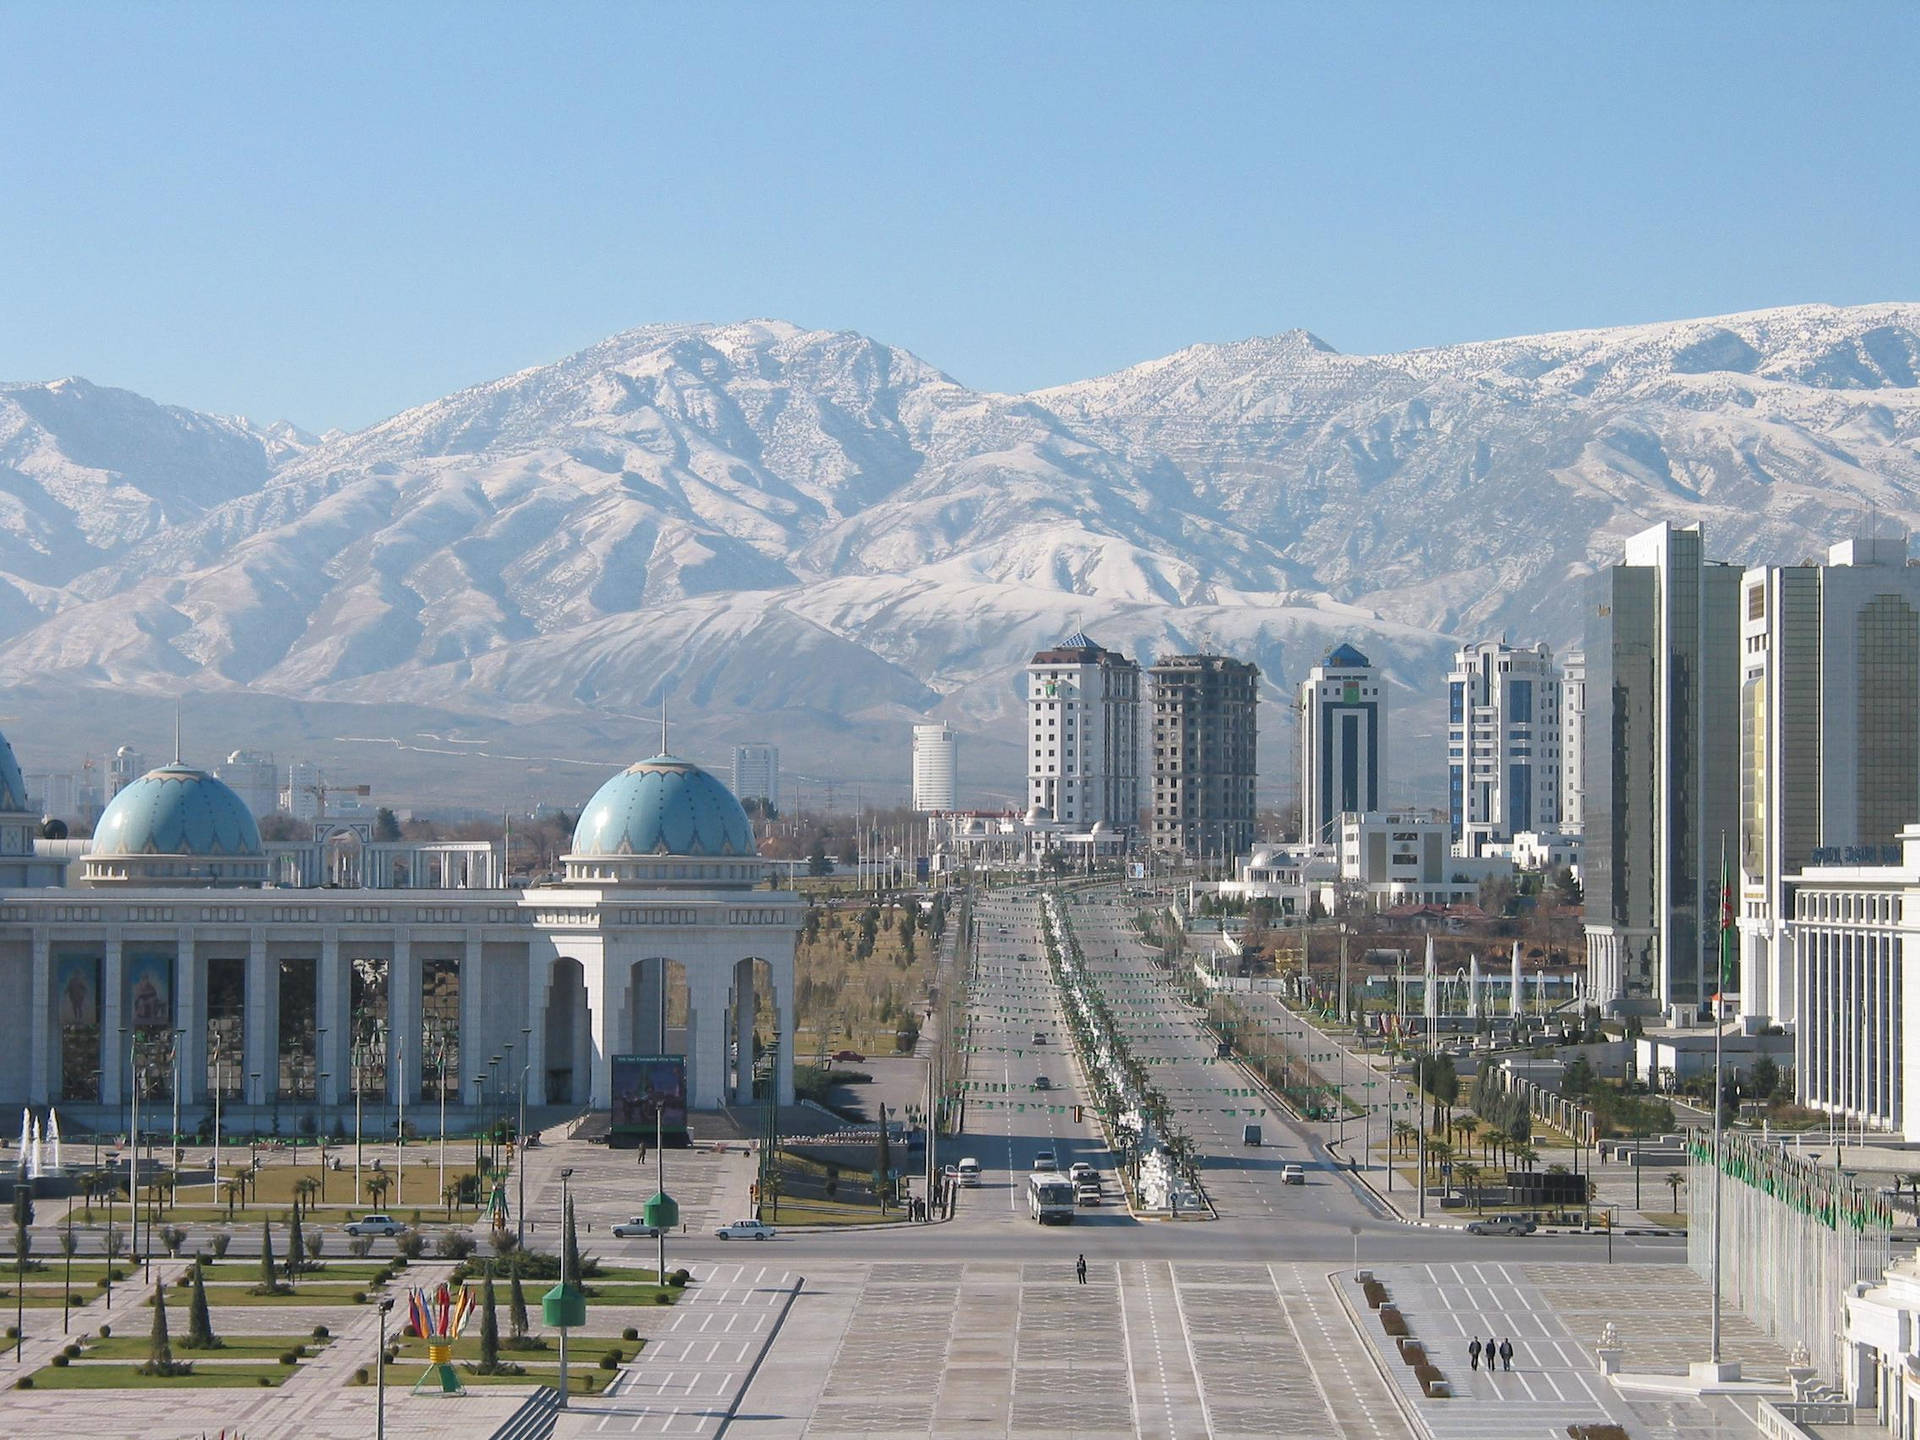 Turkmenistan Rukhiyet Palace